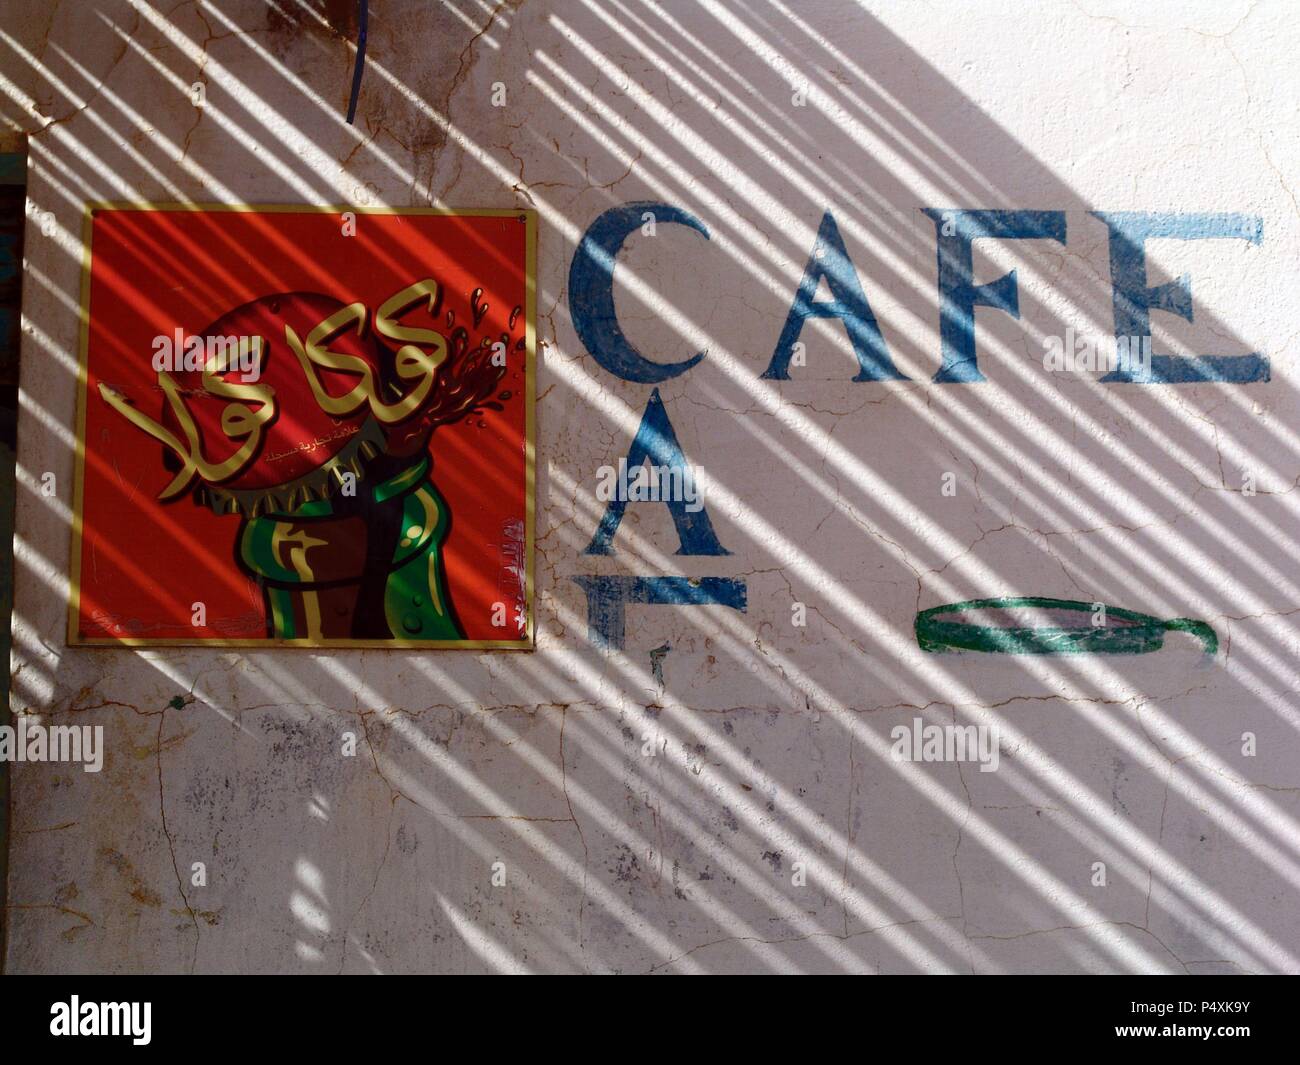 Anuncio publicitario de una bebida en la fachada de un café. El-Djem. Túnez. Stock Photo